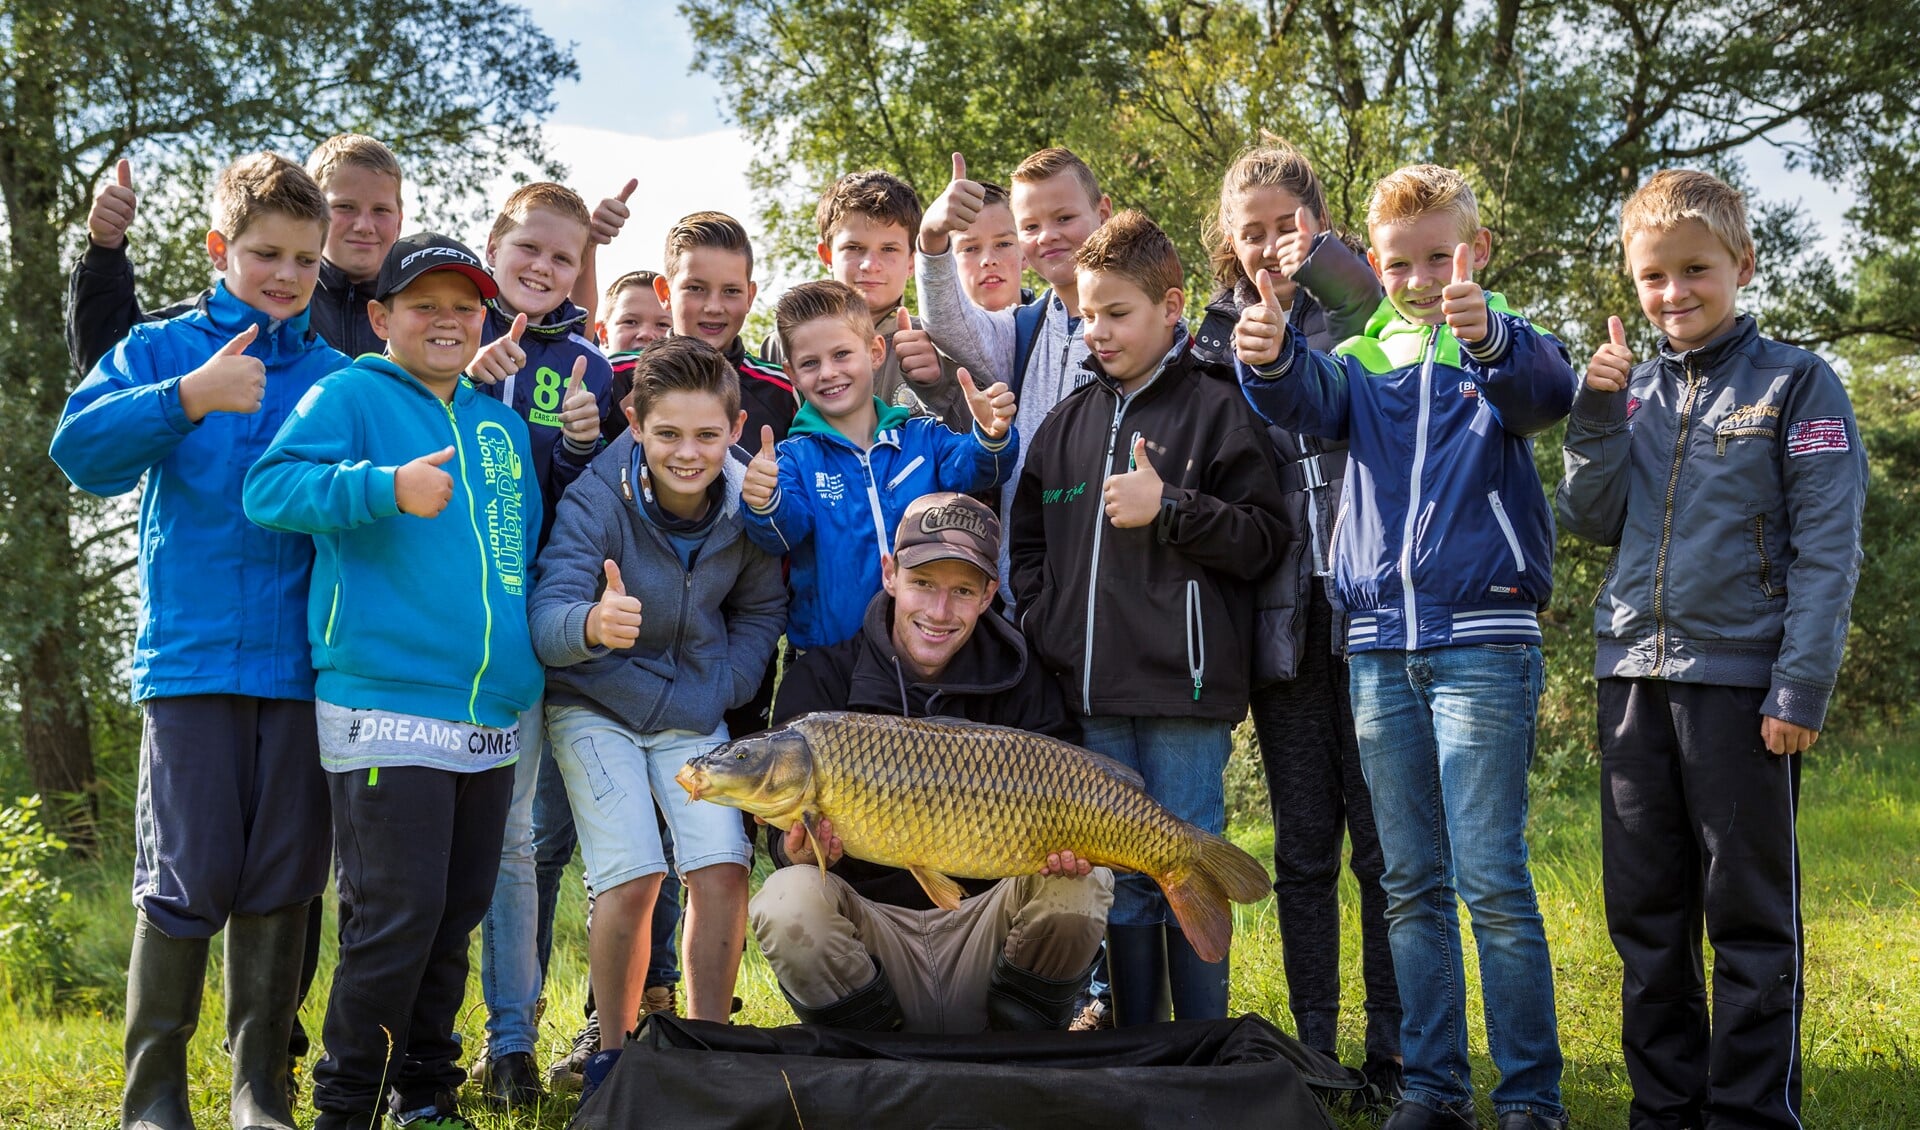 Jongelui tonen trots de vis die zij hebben gevangen tijdens een jeugdVISdag.